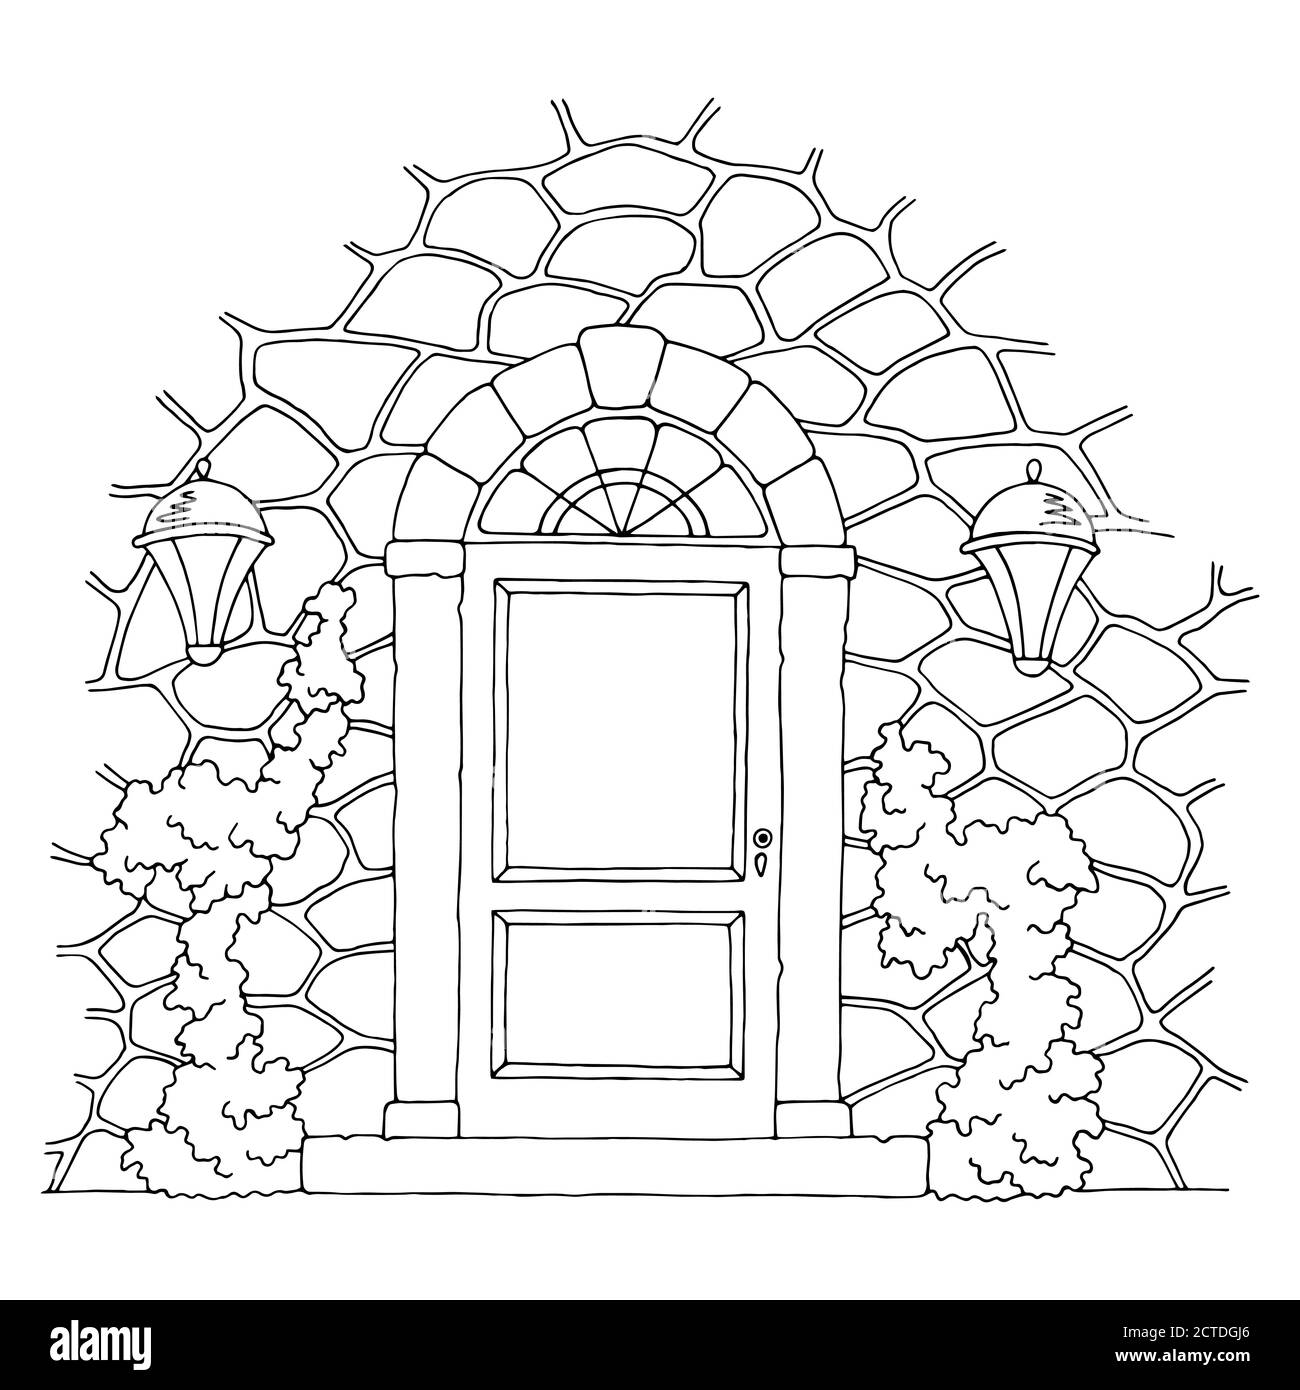 Image de la porte d'entrée noire blanche esquisse vecteur d'illustration Illustration de Vecteur